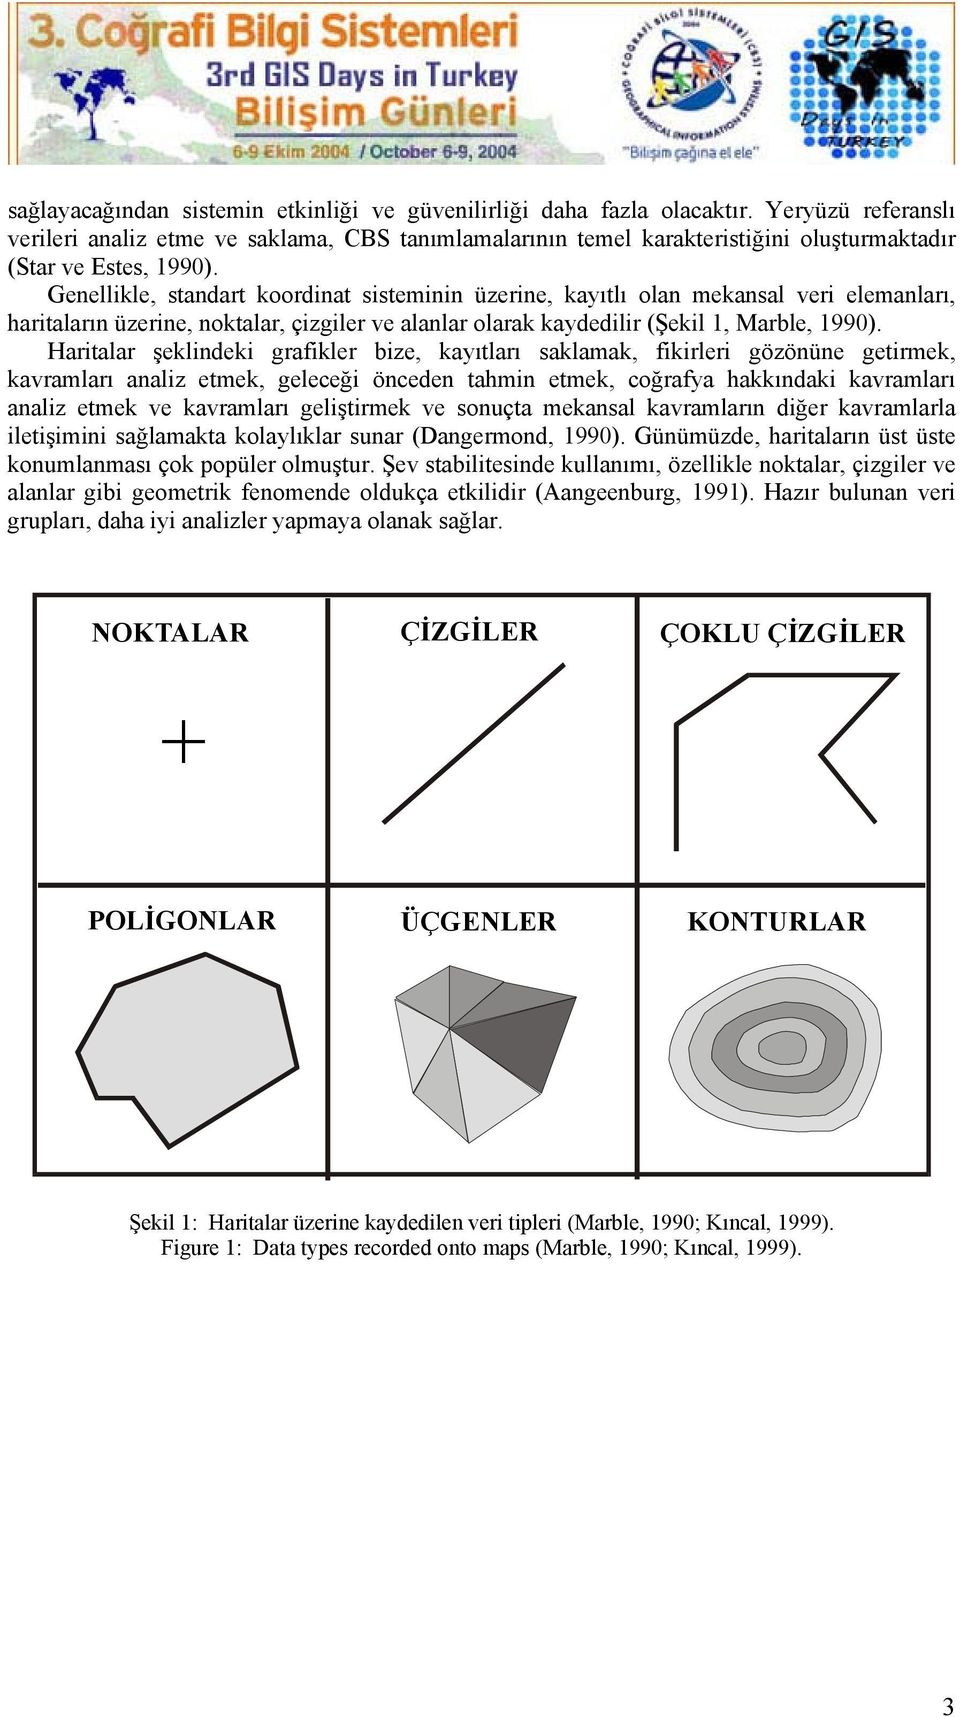 Genellikle, standart koordinat sisteminin üzerine, kayıtlı olan mekansal veri elemanları, haritaların üzerine, noktalar, çizgiler ve alanlar olarak kaydedilir (Şekil 1, Marble, 1990).